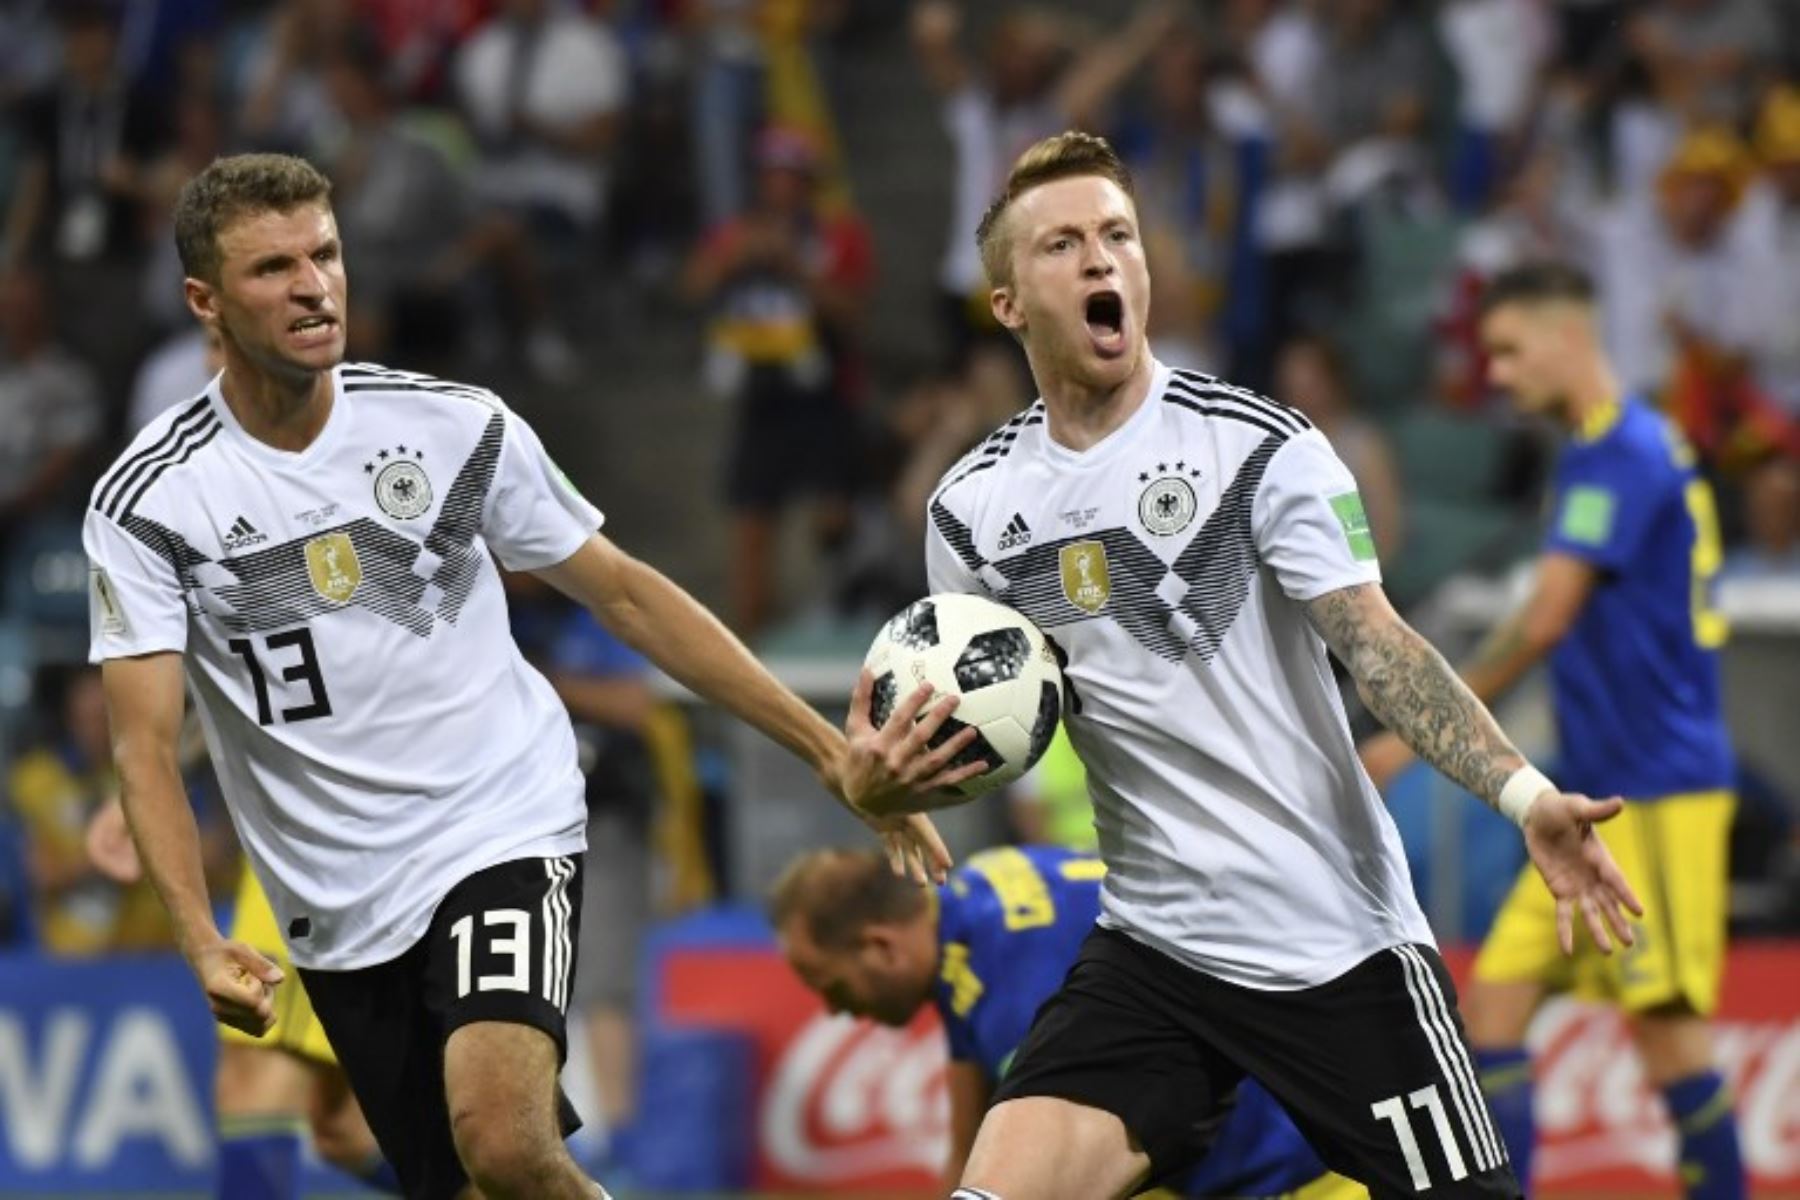 El alero de Alemania Marco Reus celebra anotar el gol de 1-1 con el delantero alemán Thomas Mueller durante el partido de fútbol del Grupo F de la Copa Mundial Rusia 2018 entre Alemania y Suecia.Foto:AFP